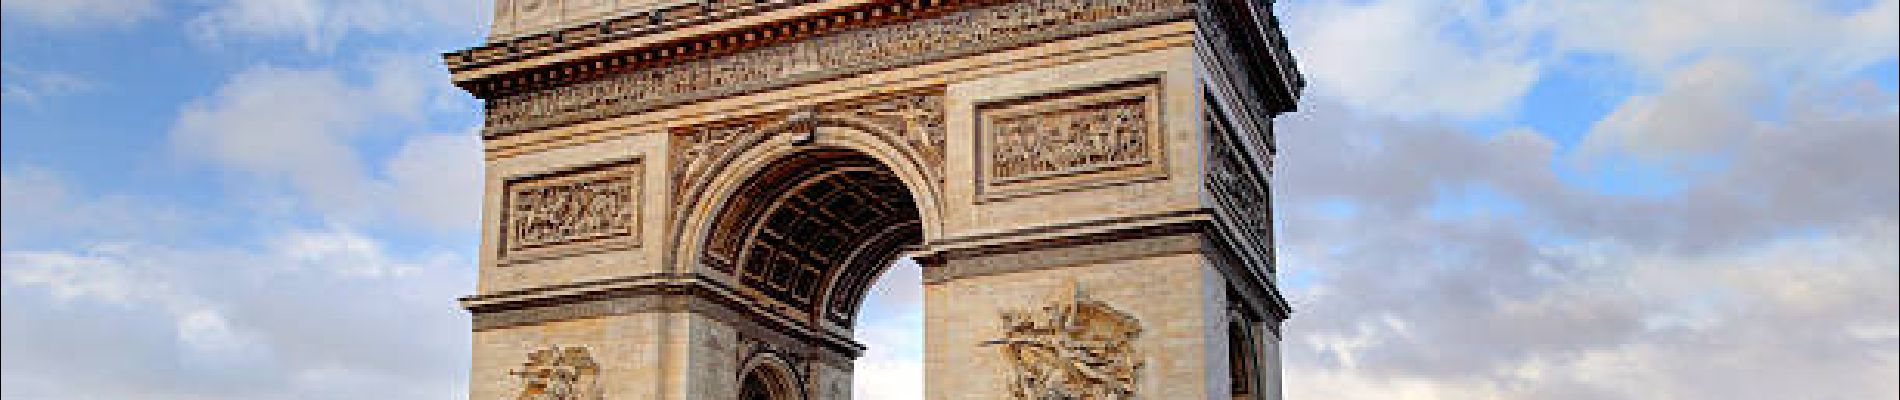 Point d'intérêt Paris - Arc de triomphe - Photo